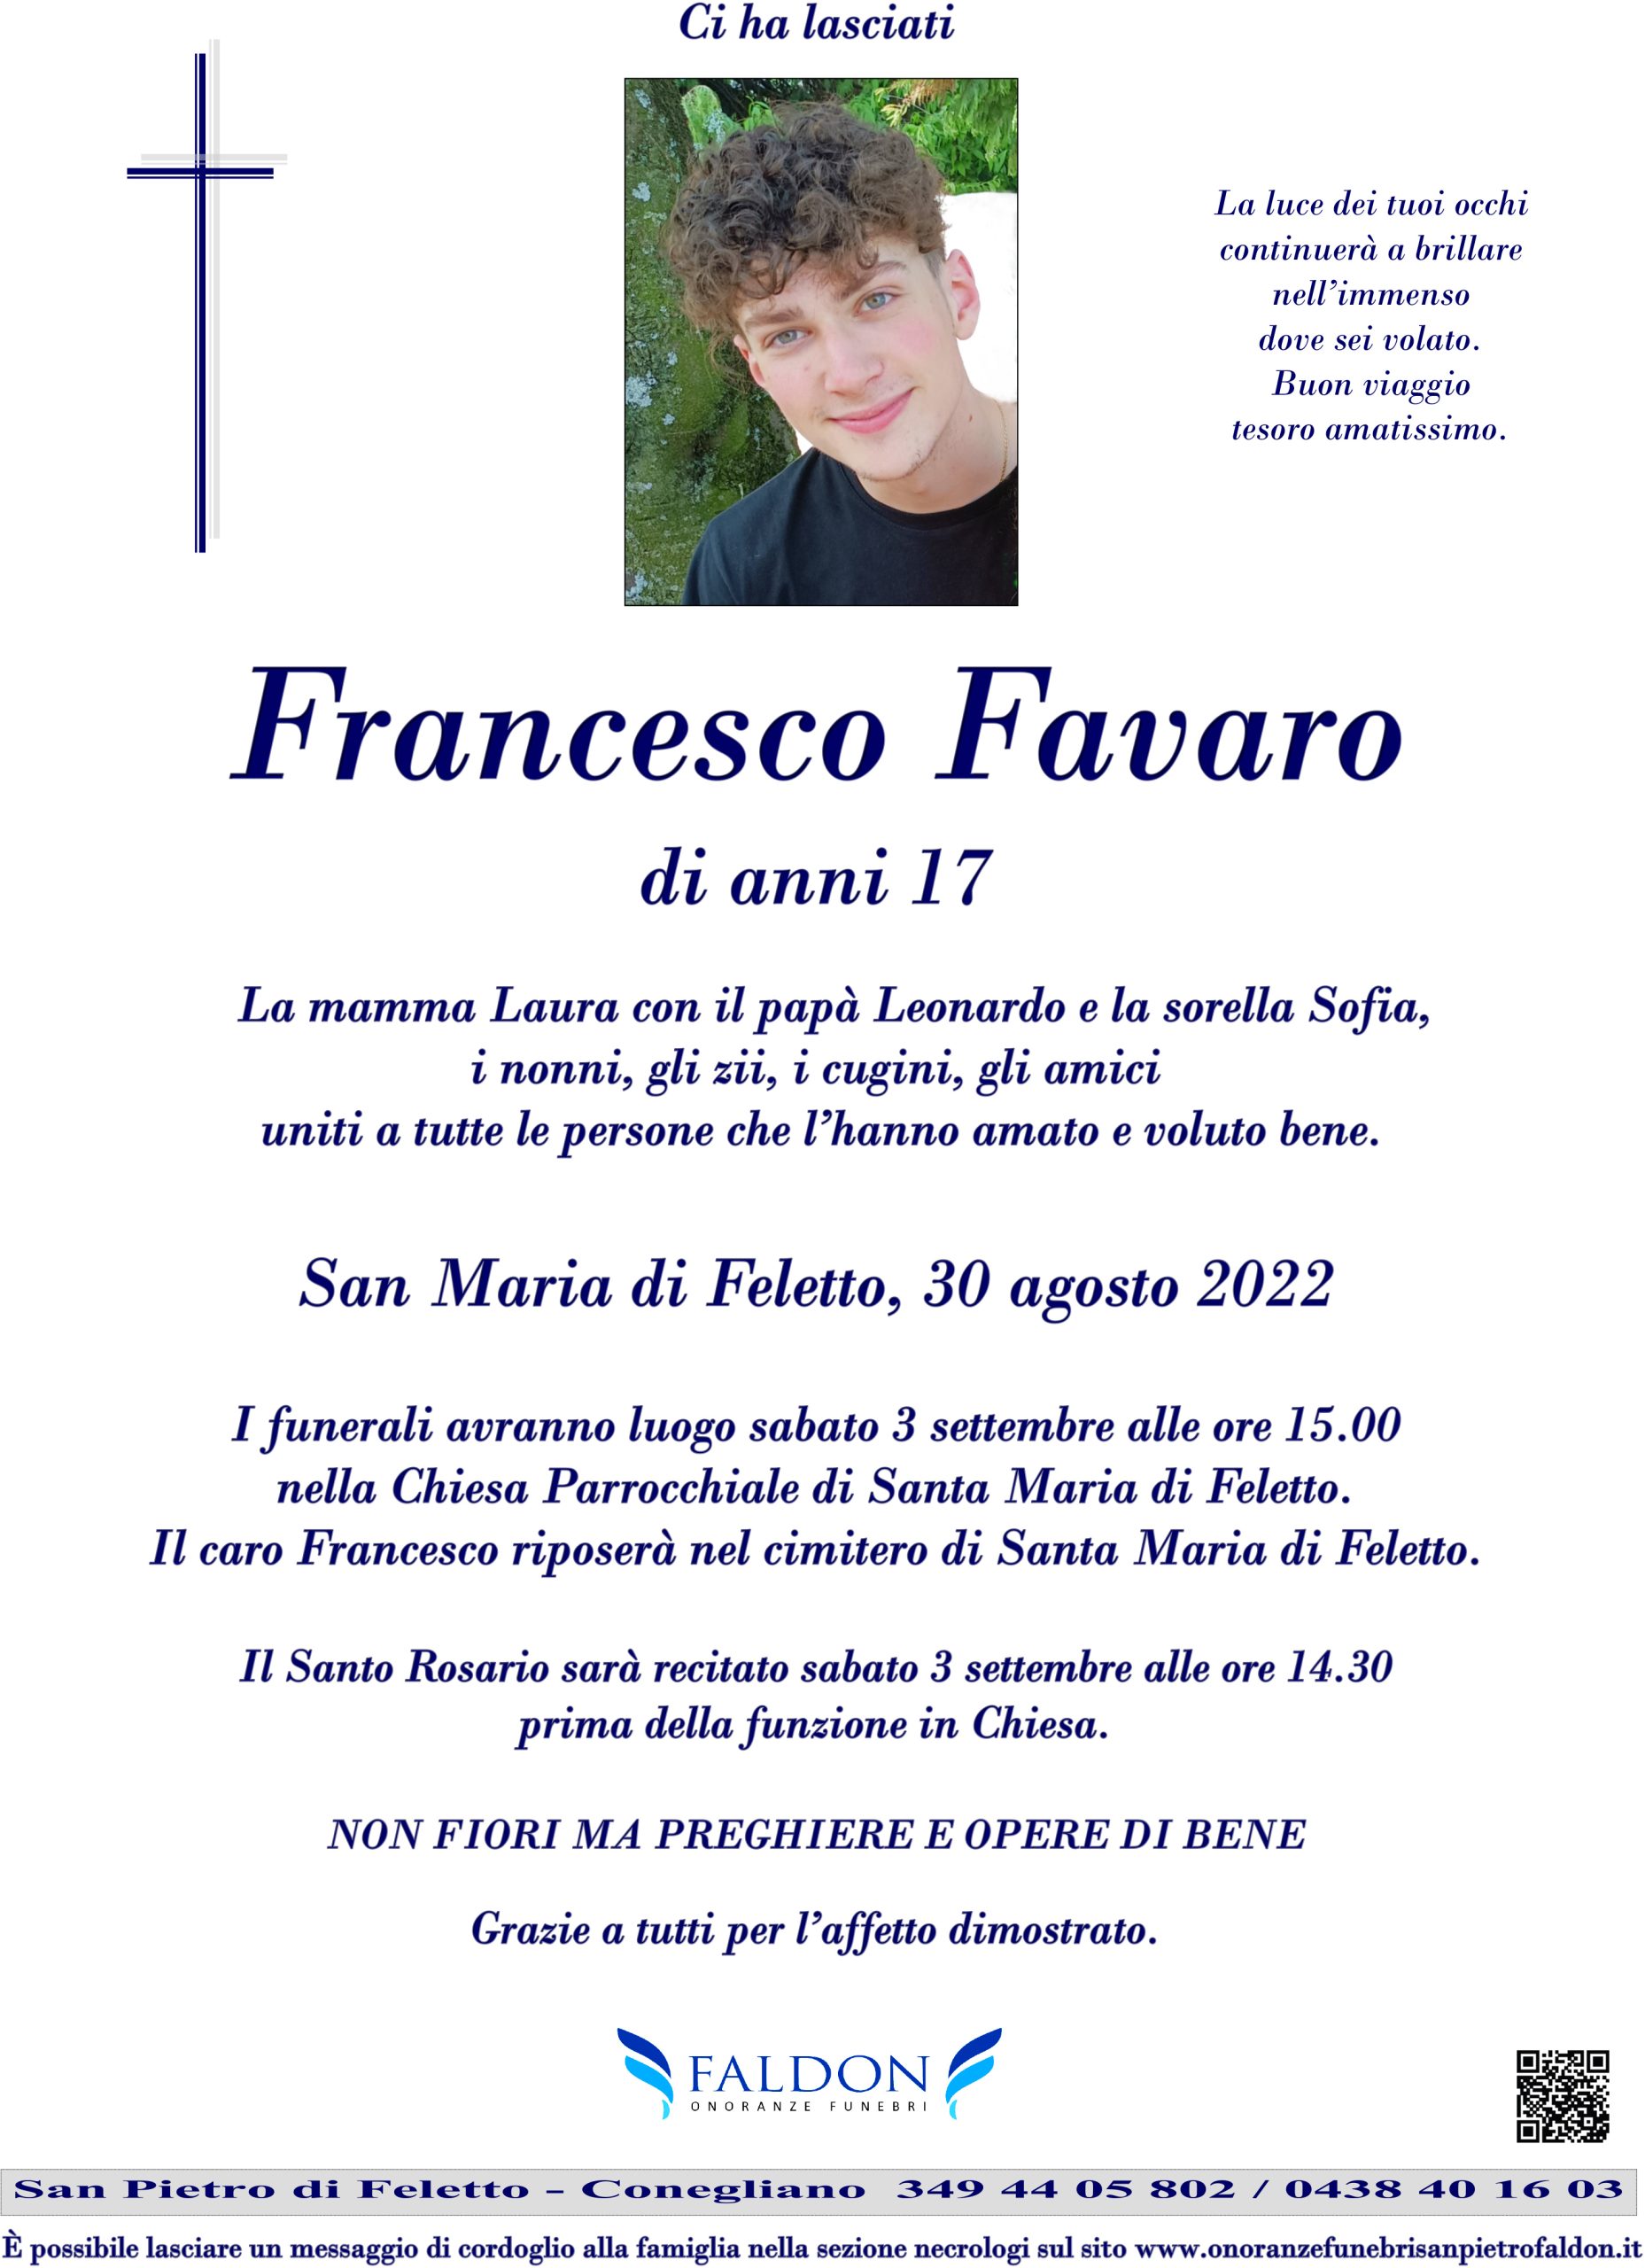 Francesco Favaro